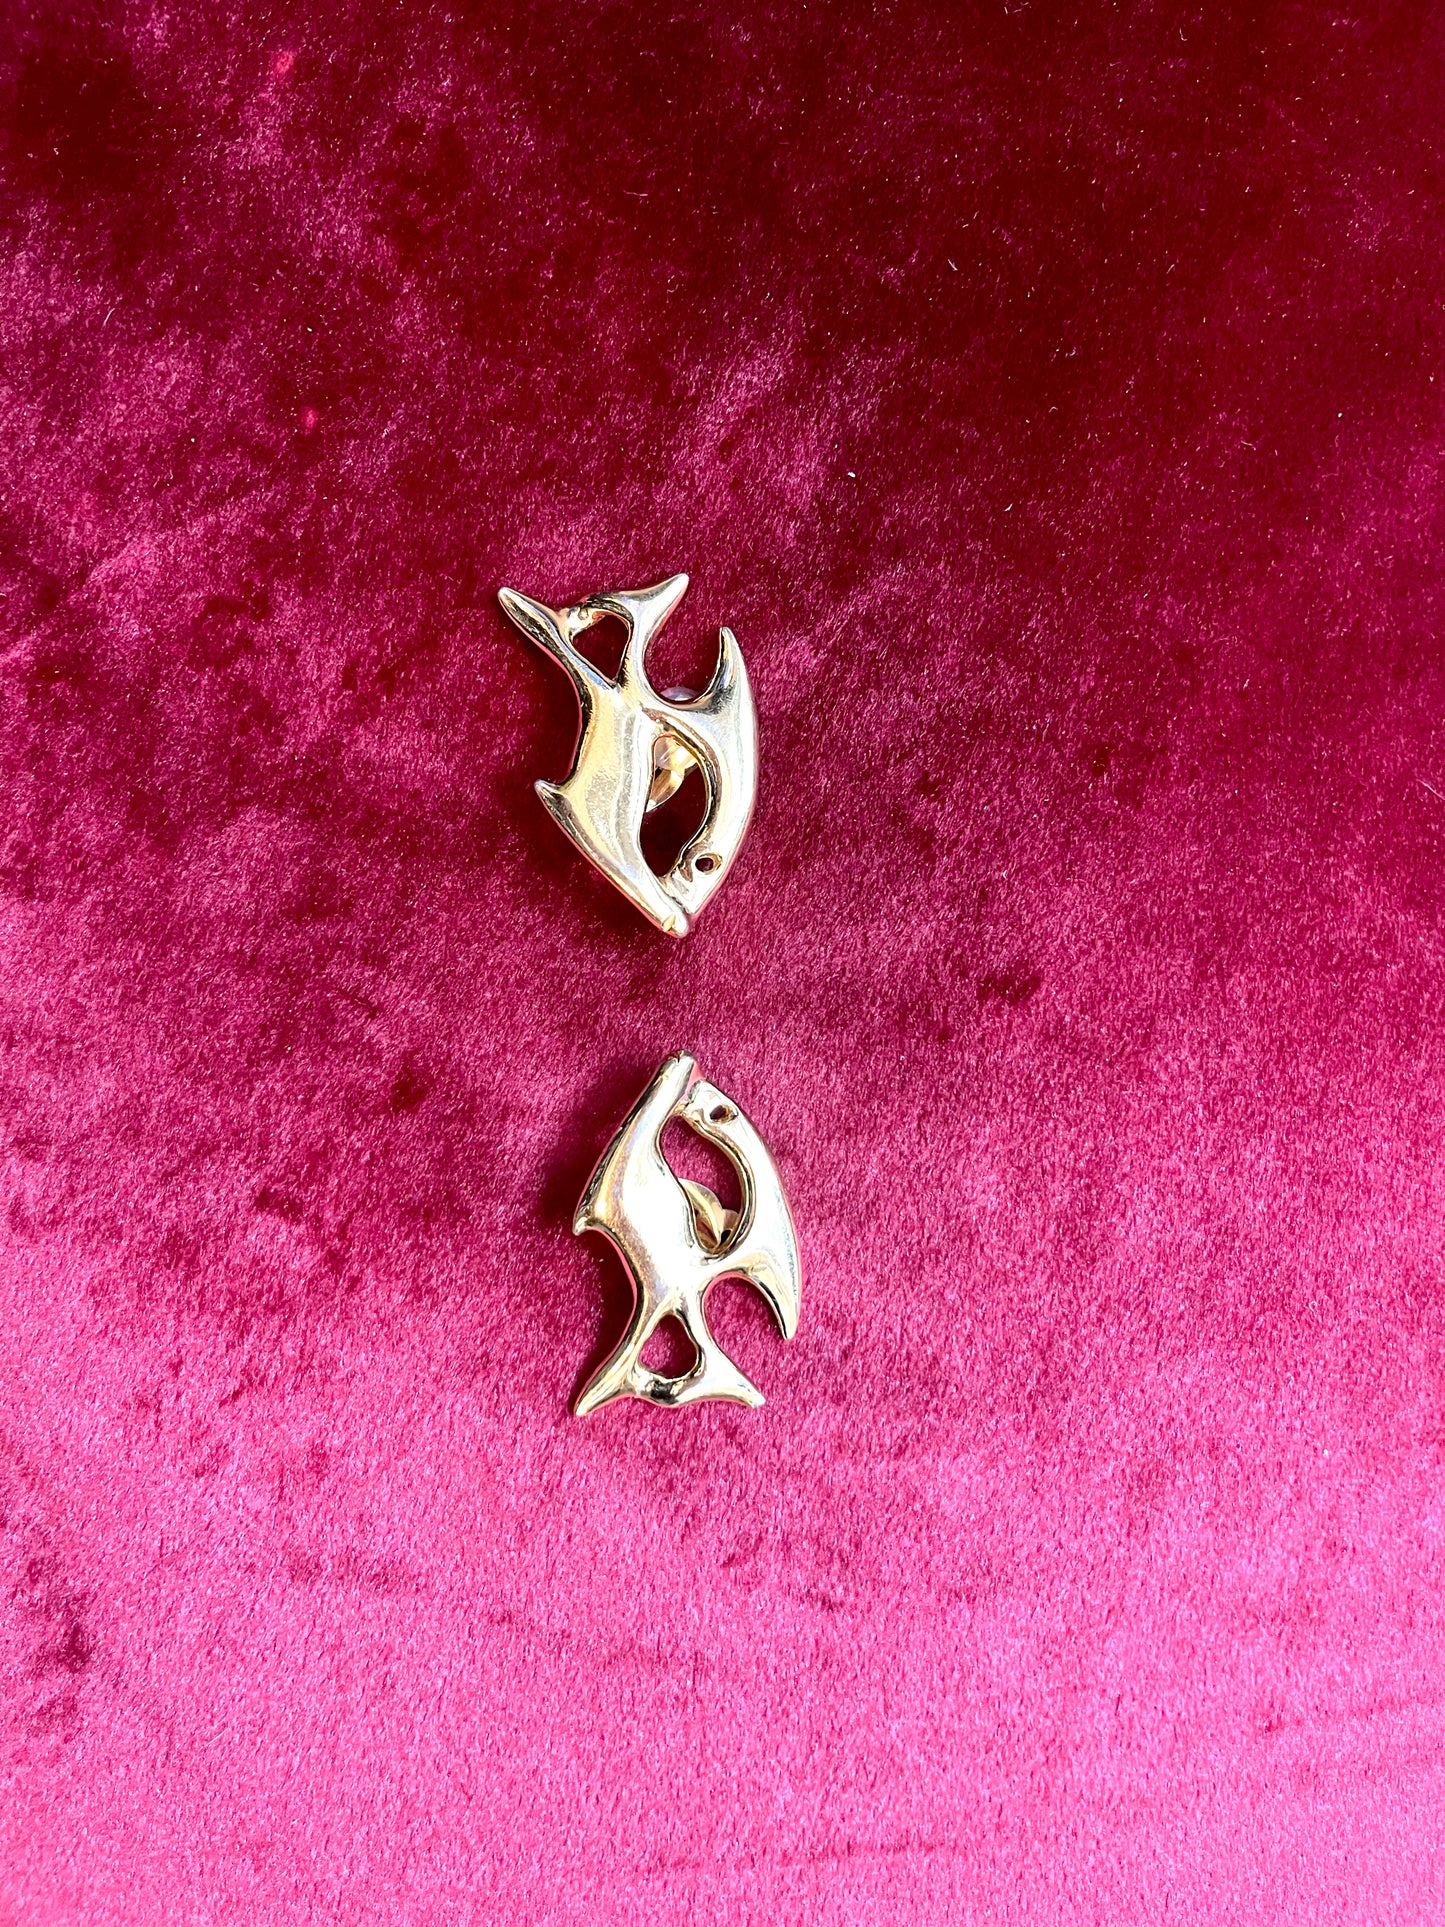 Fish Design Yves Saint Laurent Vintage Authentic Earrings